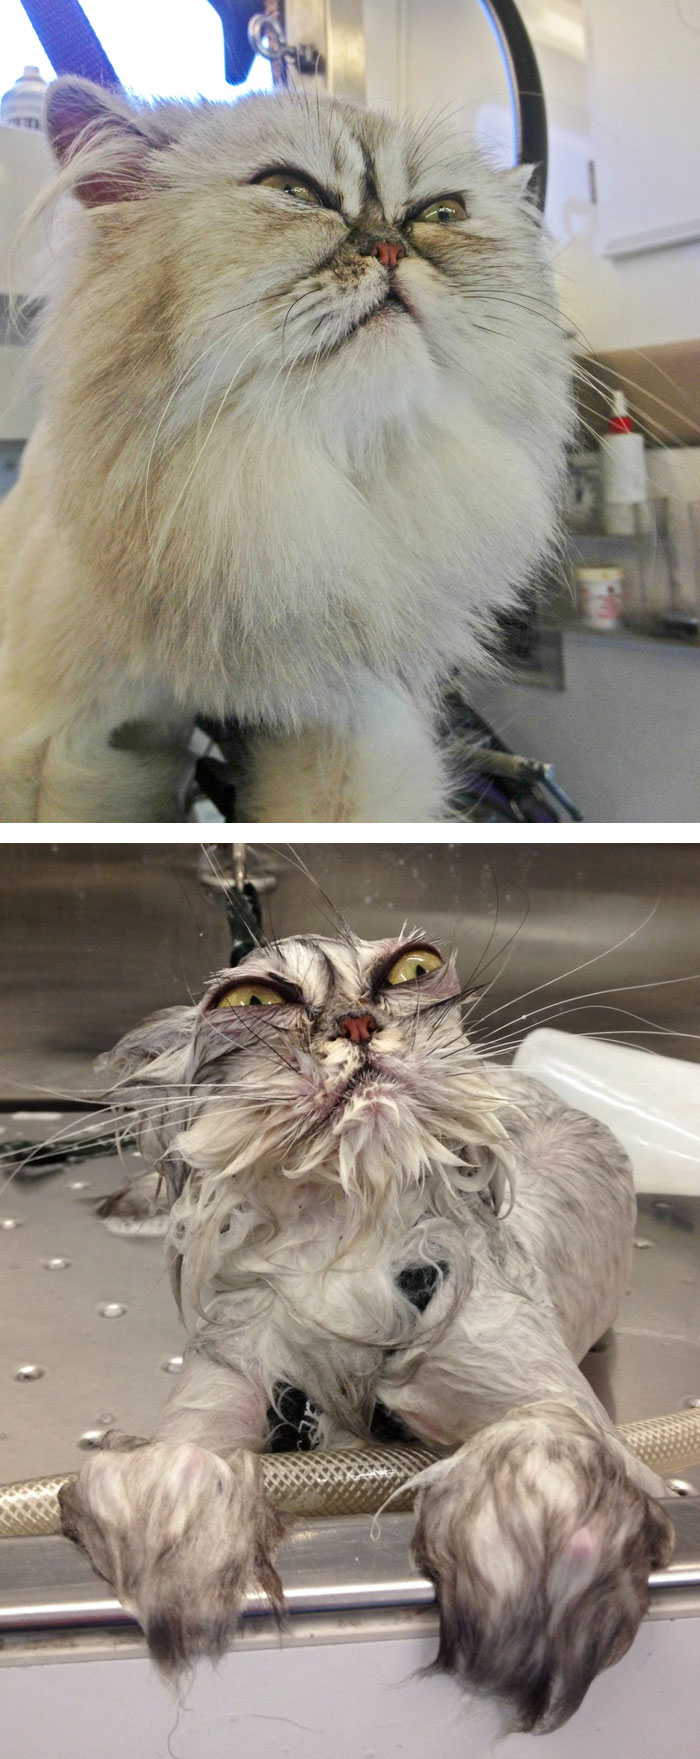 Macskák fürdés előtt és után